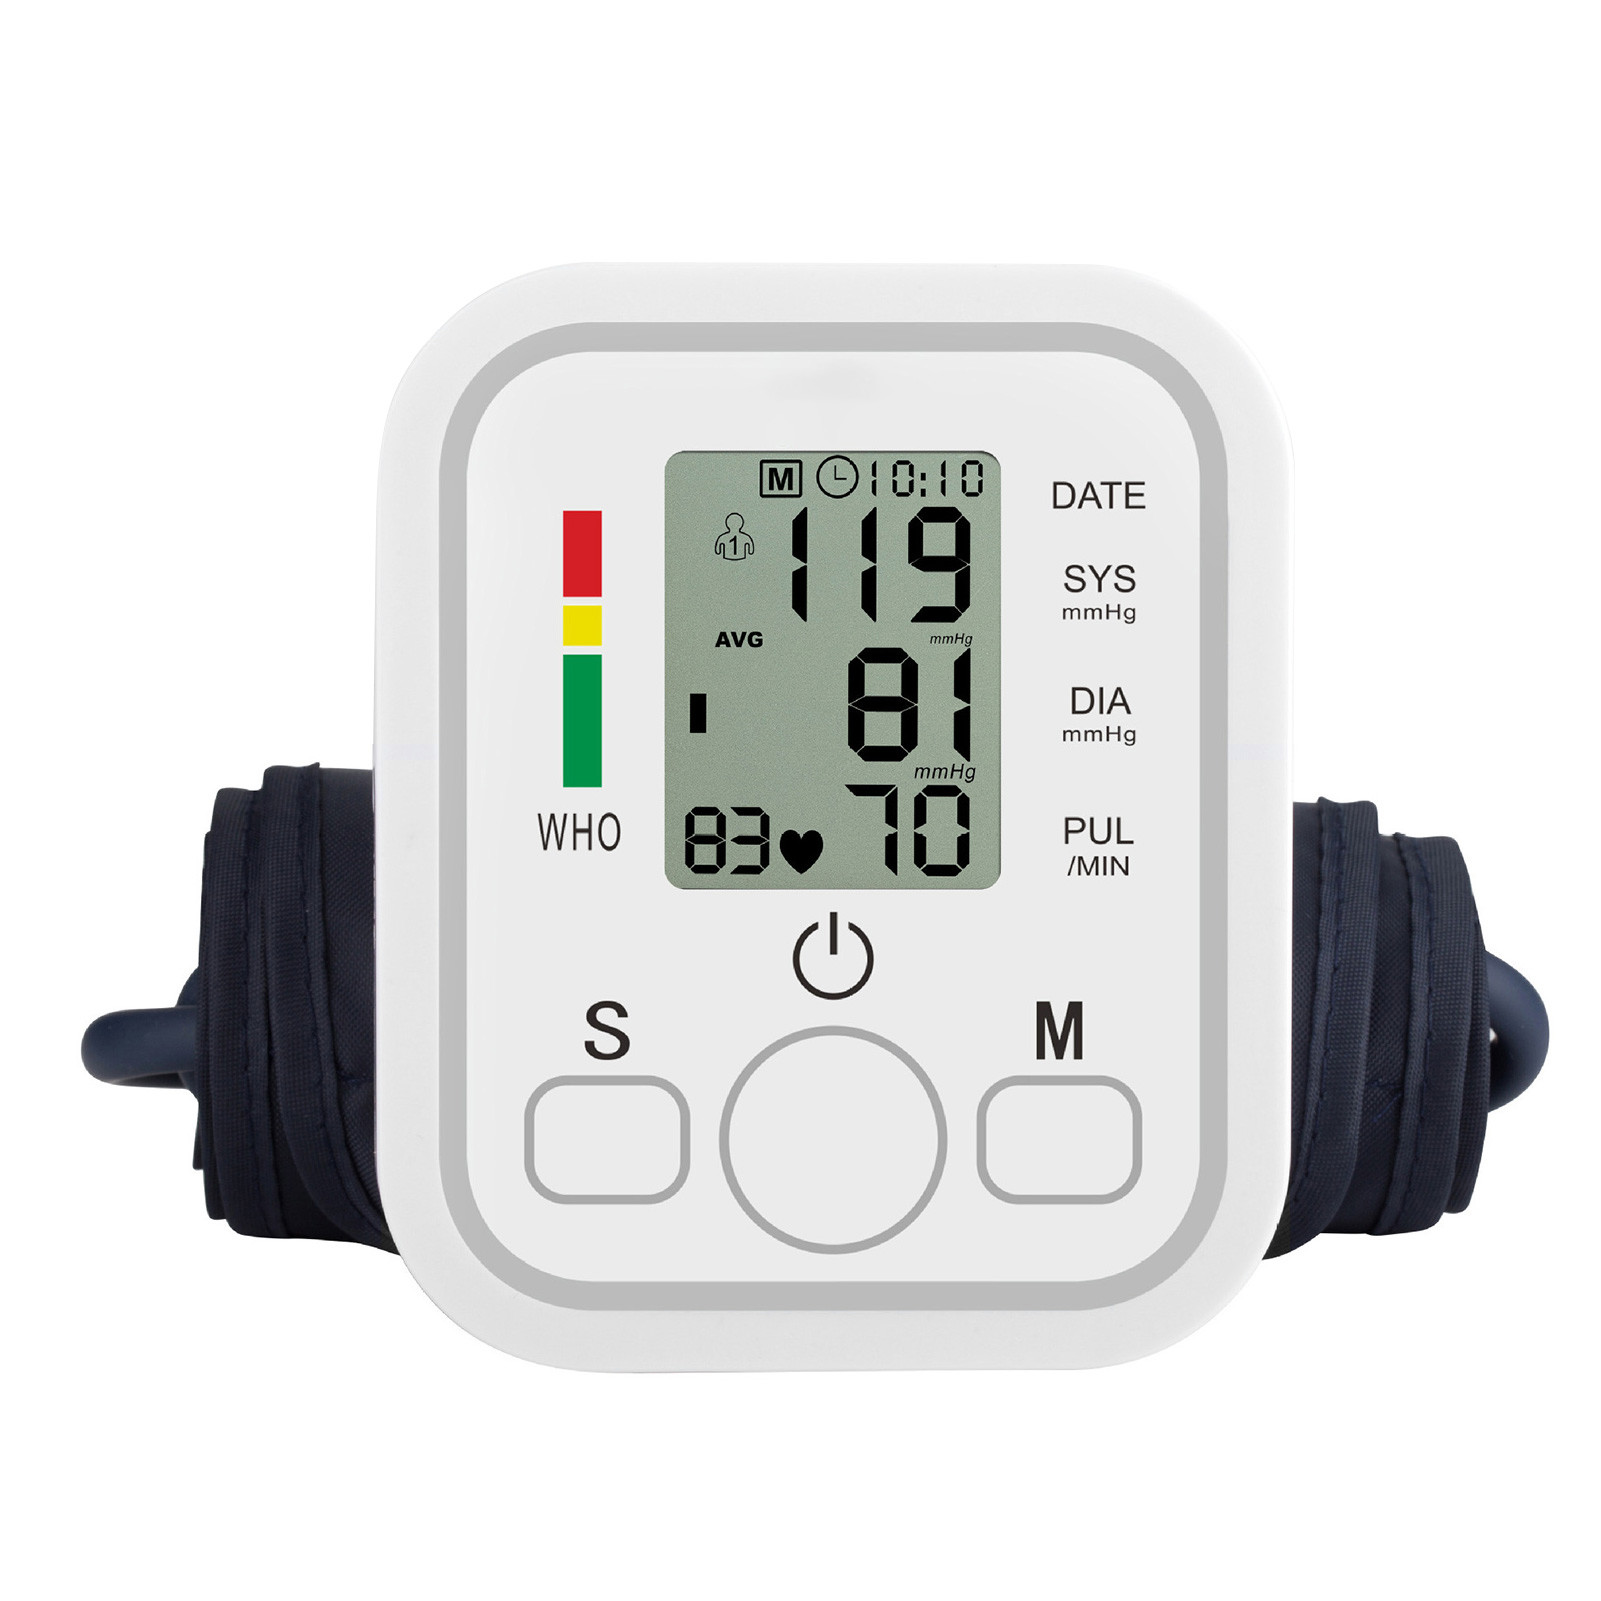 Este medidor de pressão arterial possui uma tecnologia avançada de medição, com voz inteligente que lhe transmite todas as informações do ecrã